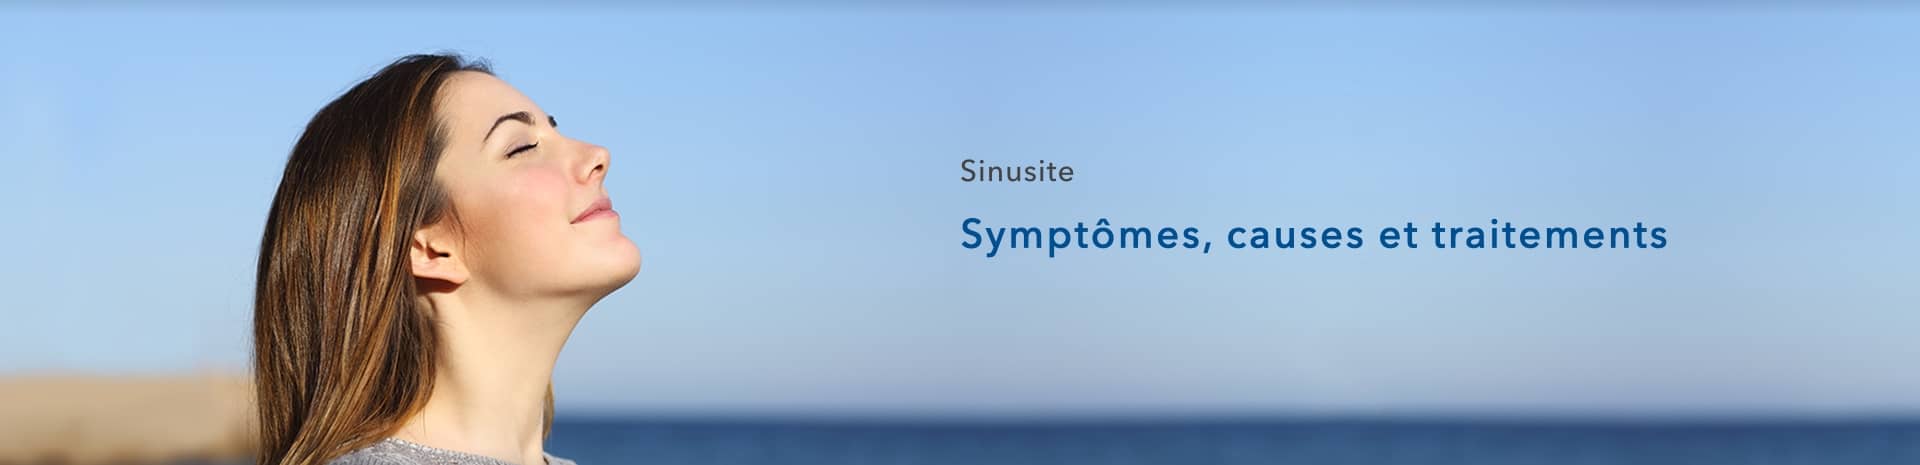 Sinusite Guide